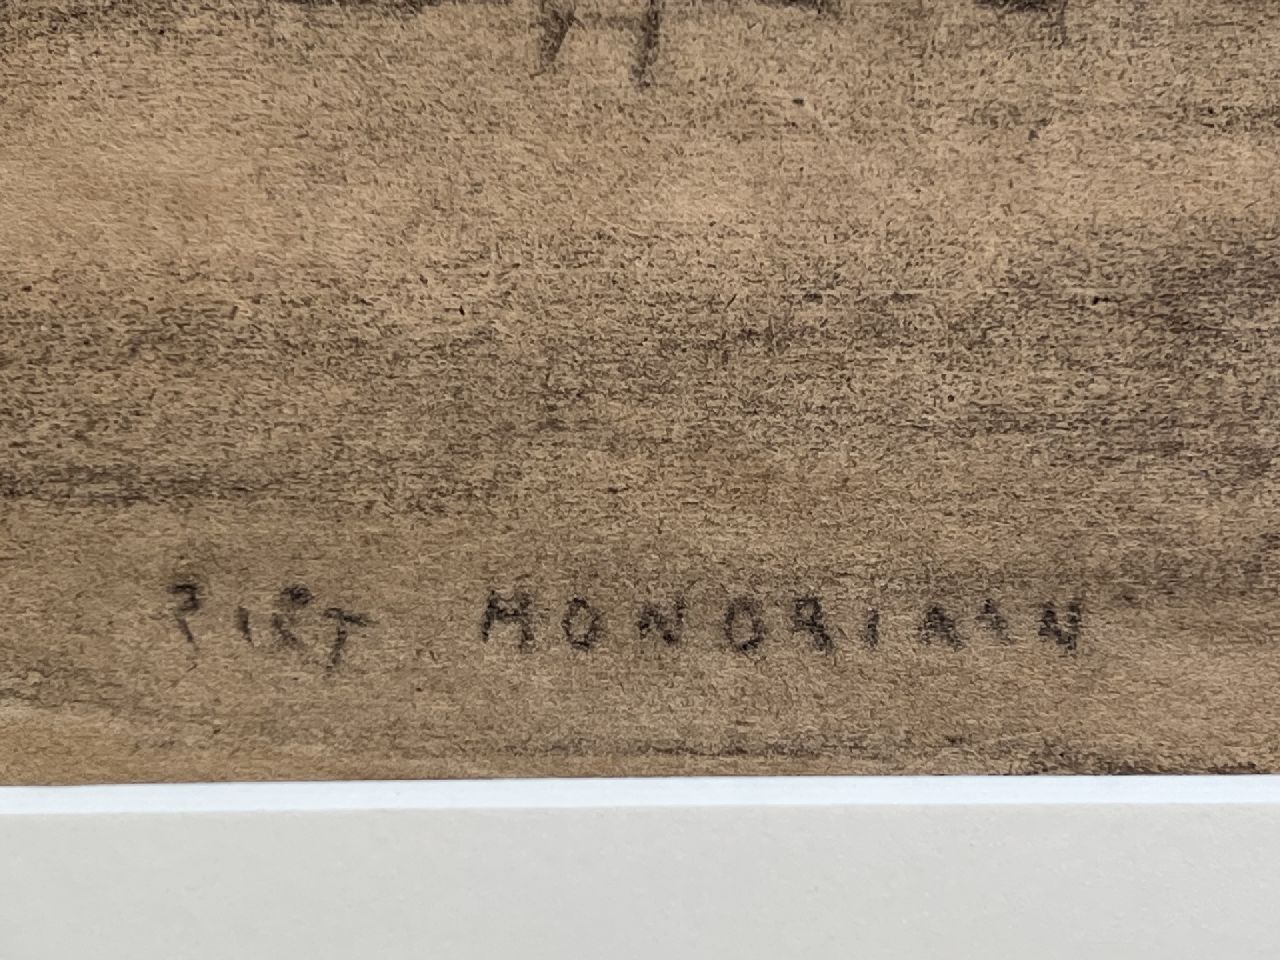 Piet Mondriaan signaturen Bomengroep